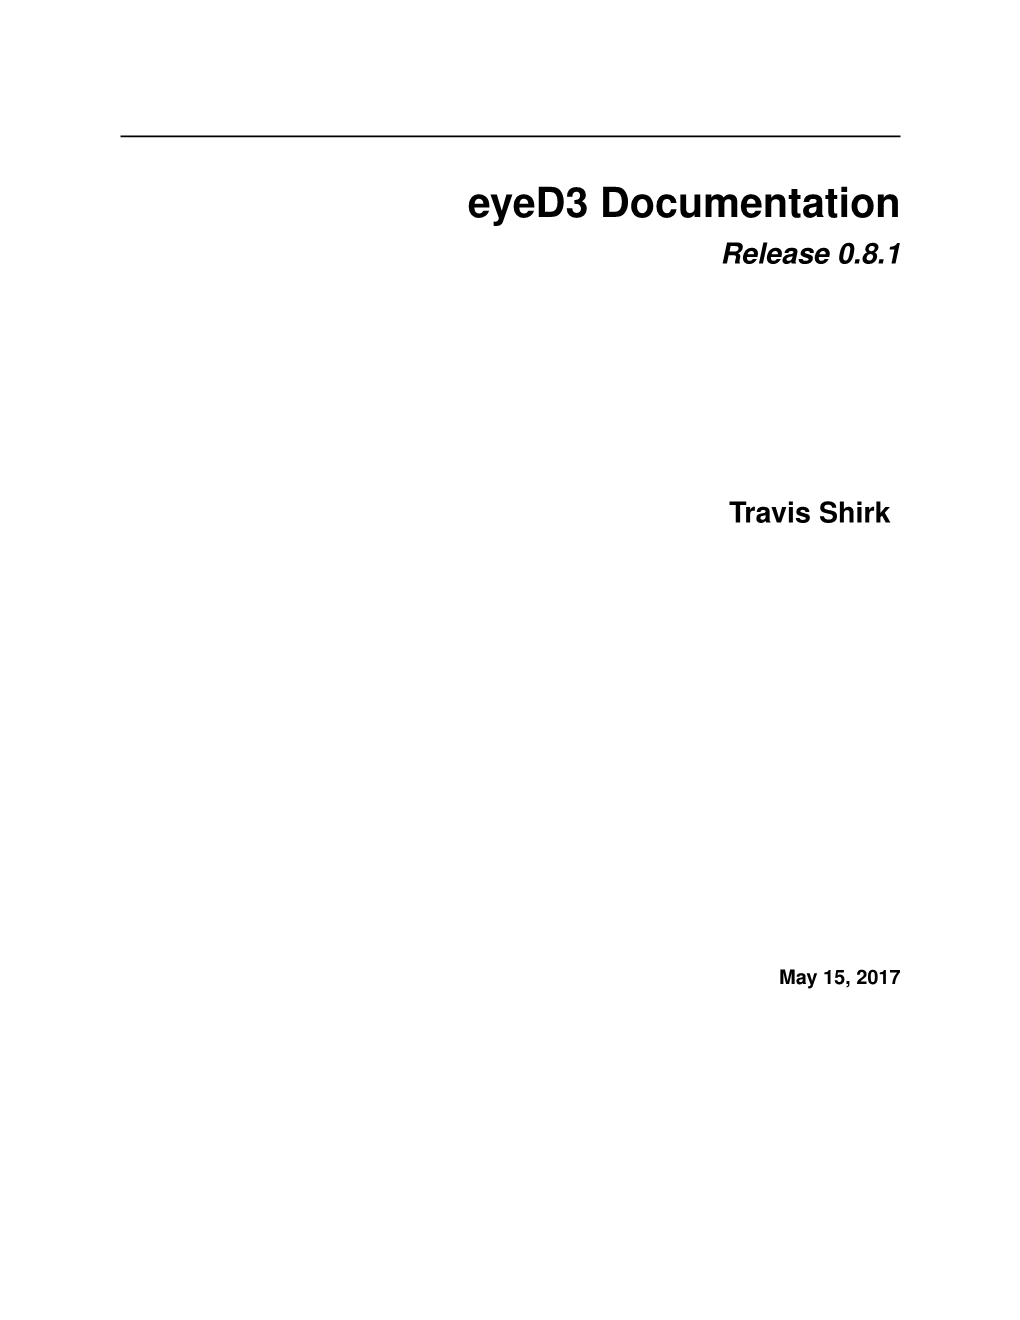 Eyed3 Documentation Release 0.8.1